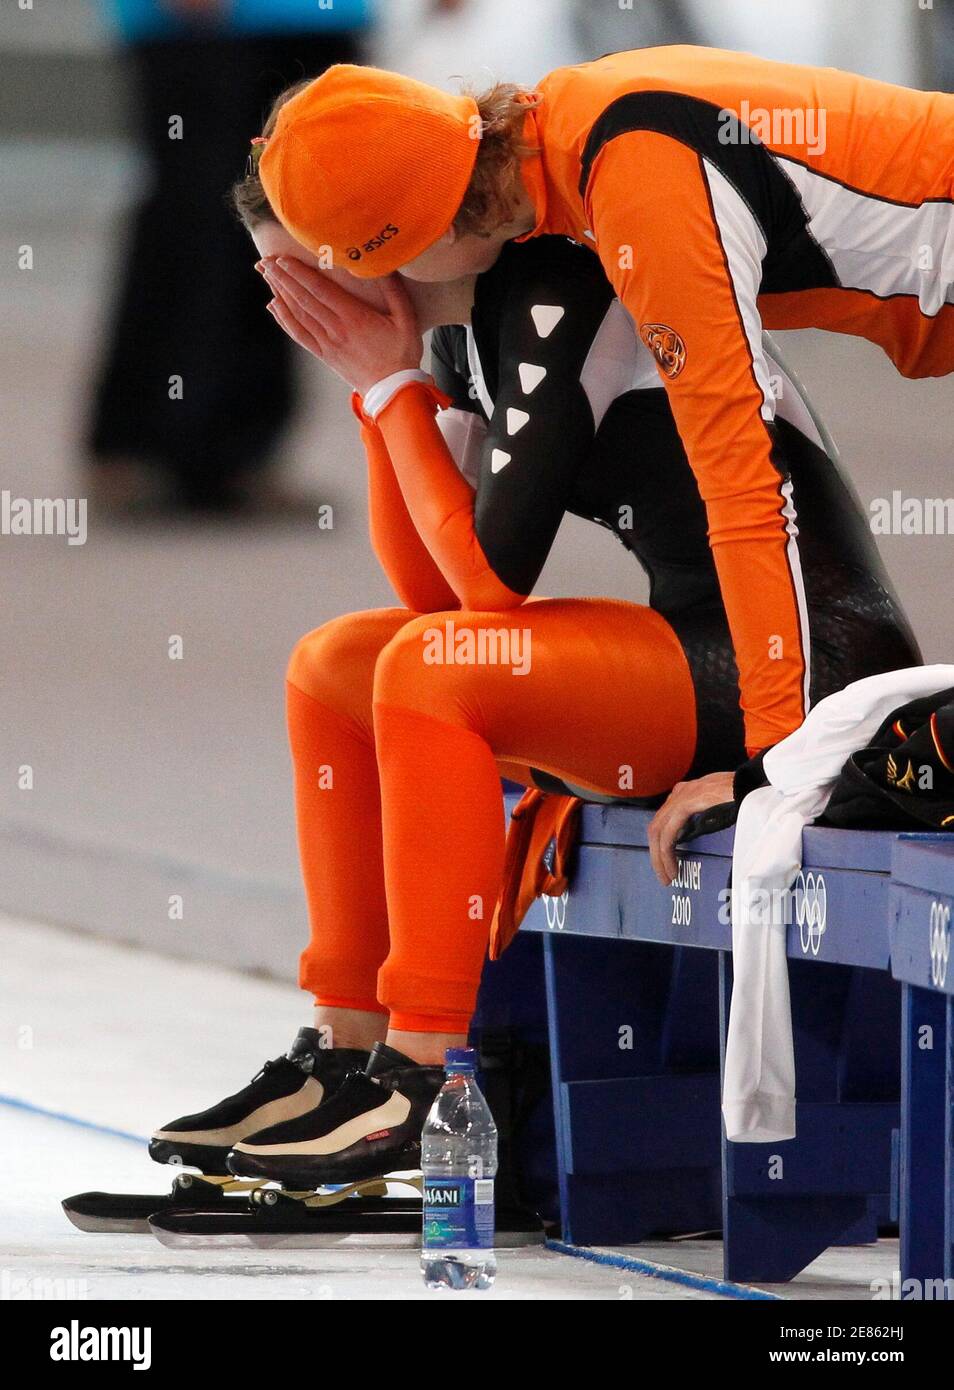 Ireen Wust aus den Niederlanden wird von Teamkollege Renate Groenewold nach  dem 3000-Meter-Eisschnelllauf der Frauen beim Richmond Olympic Oval während  der Olympischen Winterspiele 2010 in Vancouver am 14. Februar 2010  getröstet. REUTERS/Jerry